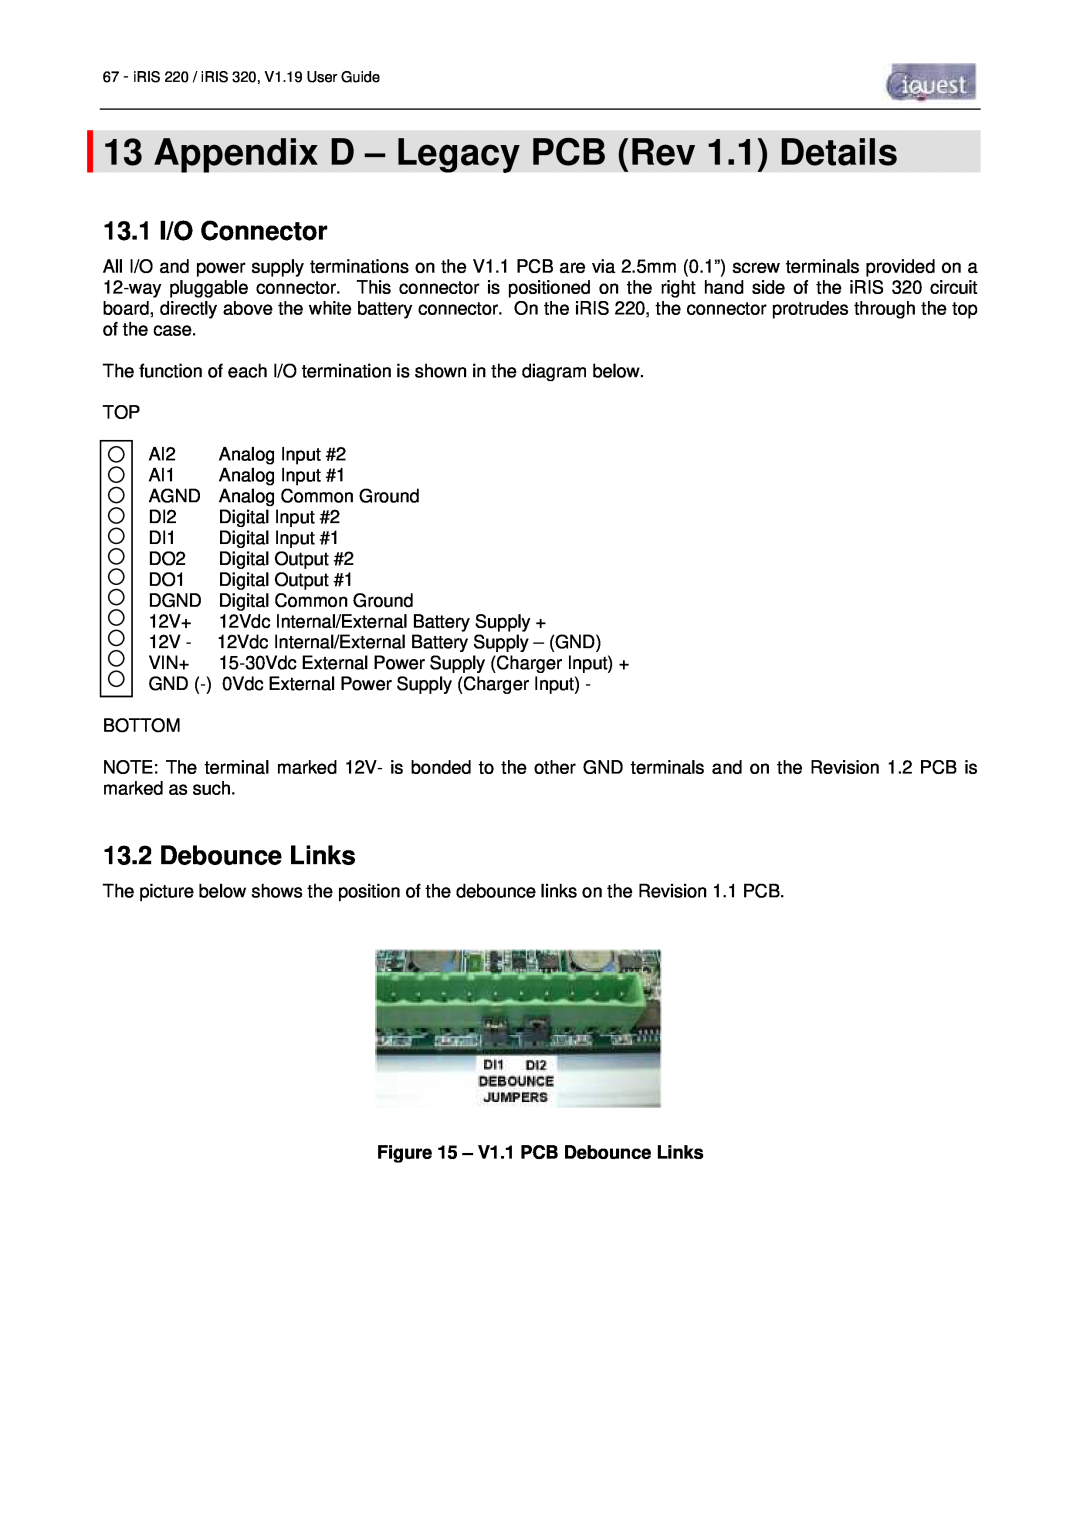 Optiquest iRIS 220, iRIS 320 manual Appendix D - Legacy PCB Rev 1.1 Details, 13.1 I/O Connector, V1.1 PCB Debounce Links 